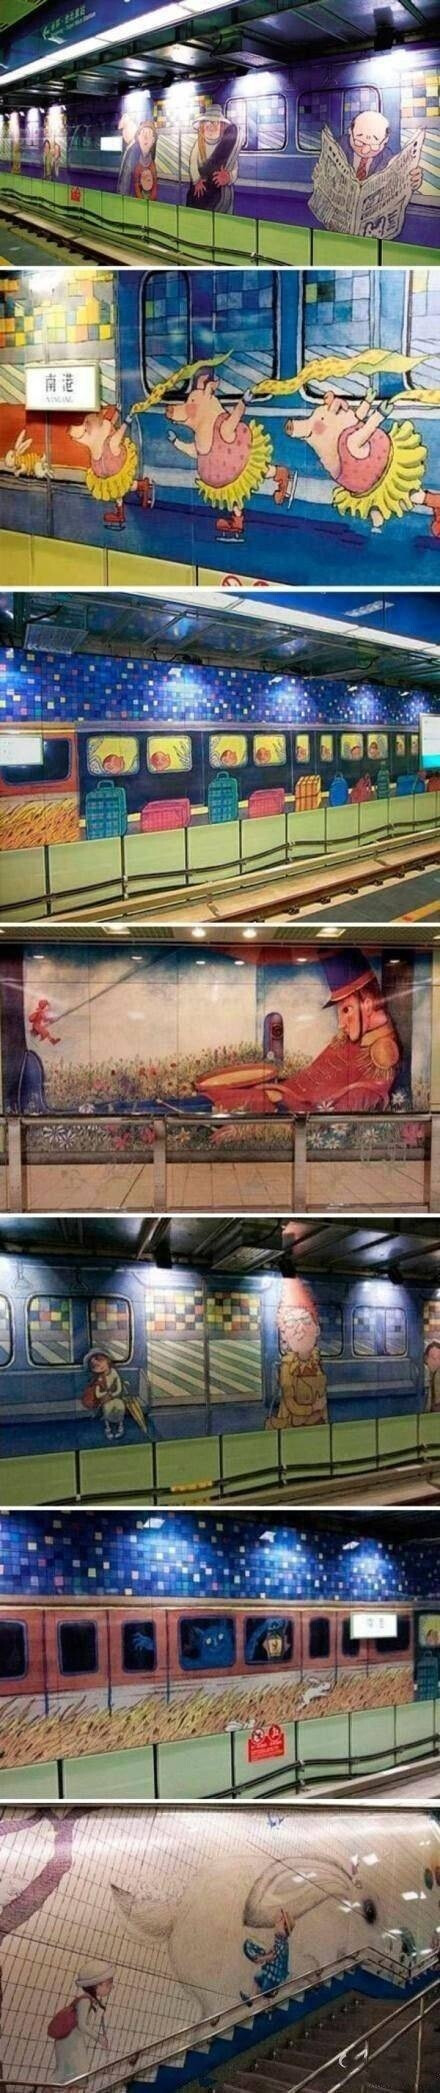 台北最漂亮的捷运站——台湾几米地下铁位于台湾南港站，站内充满了台湾著名绘本画家几米的大型壁画。通往童话的地下铁！